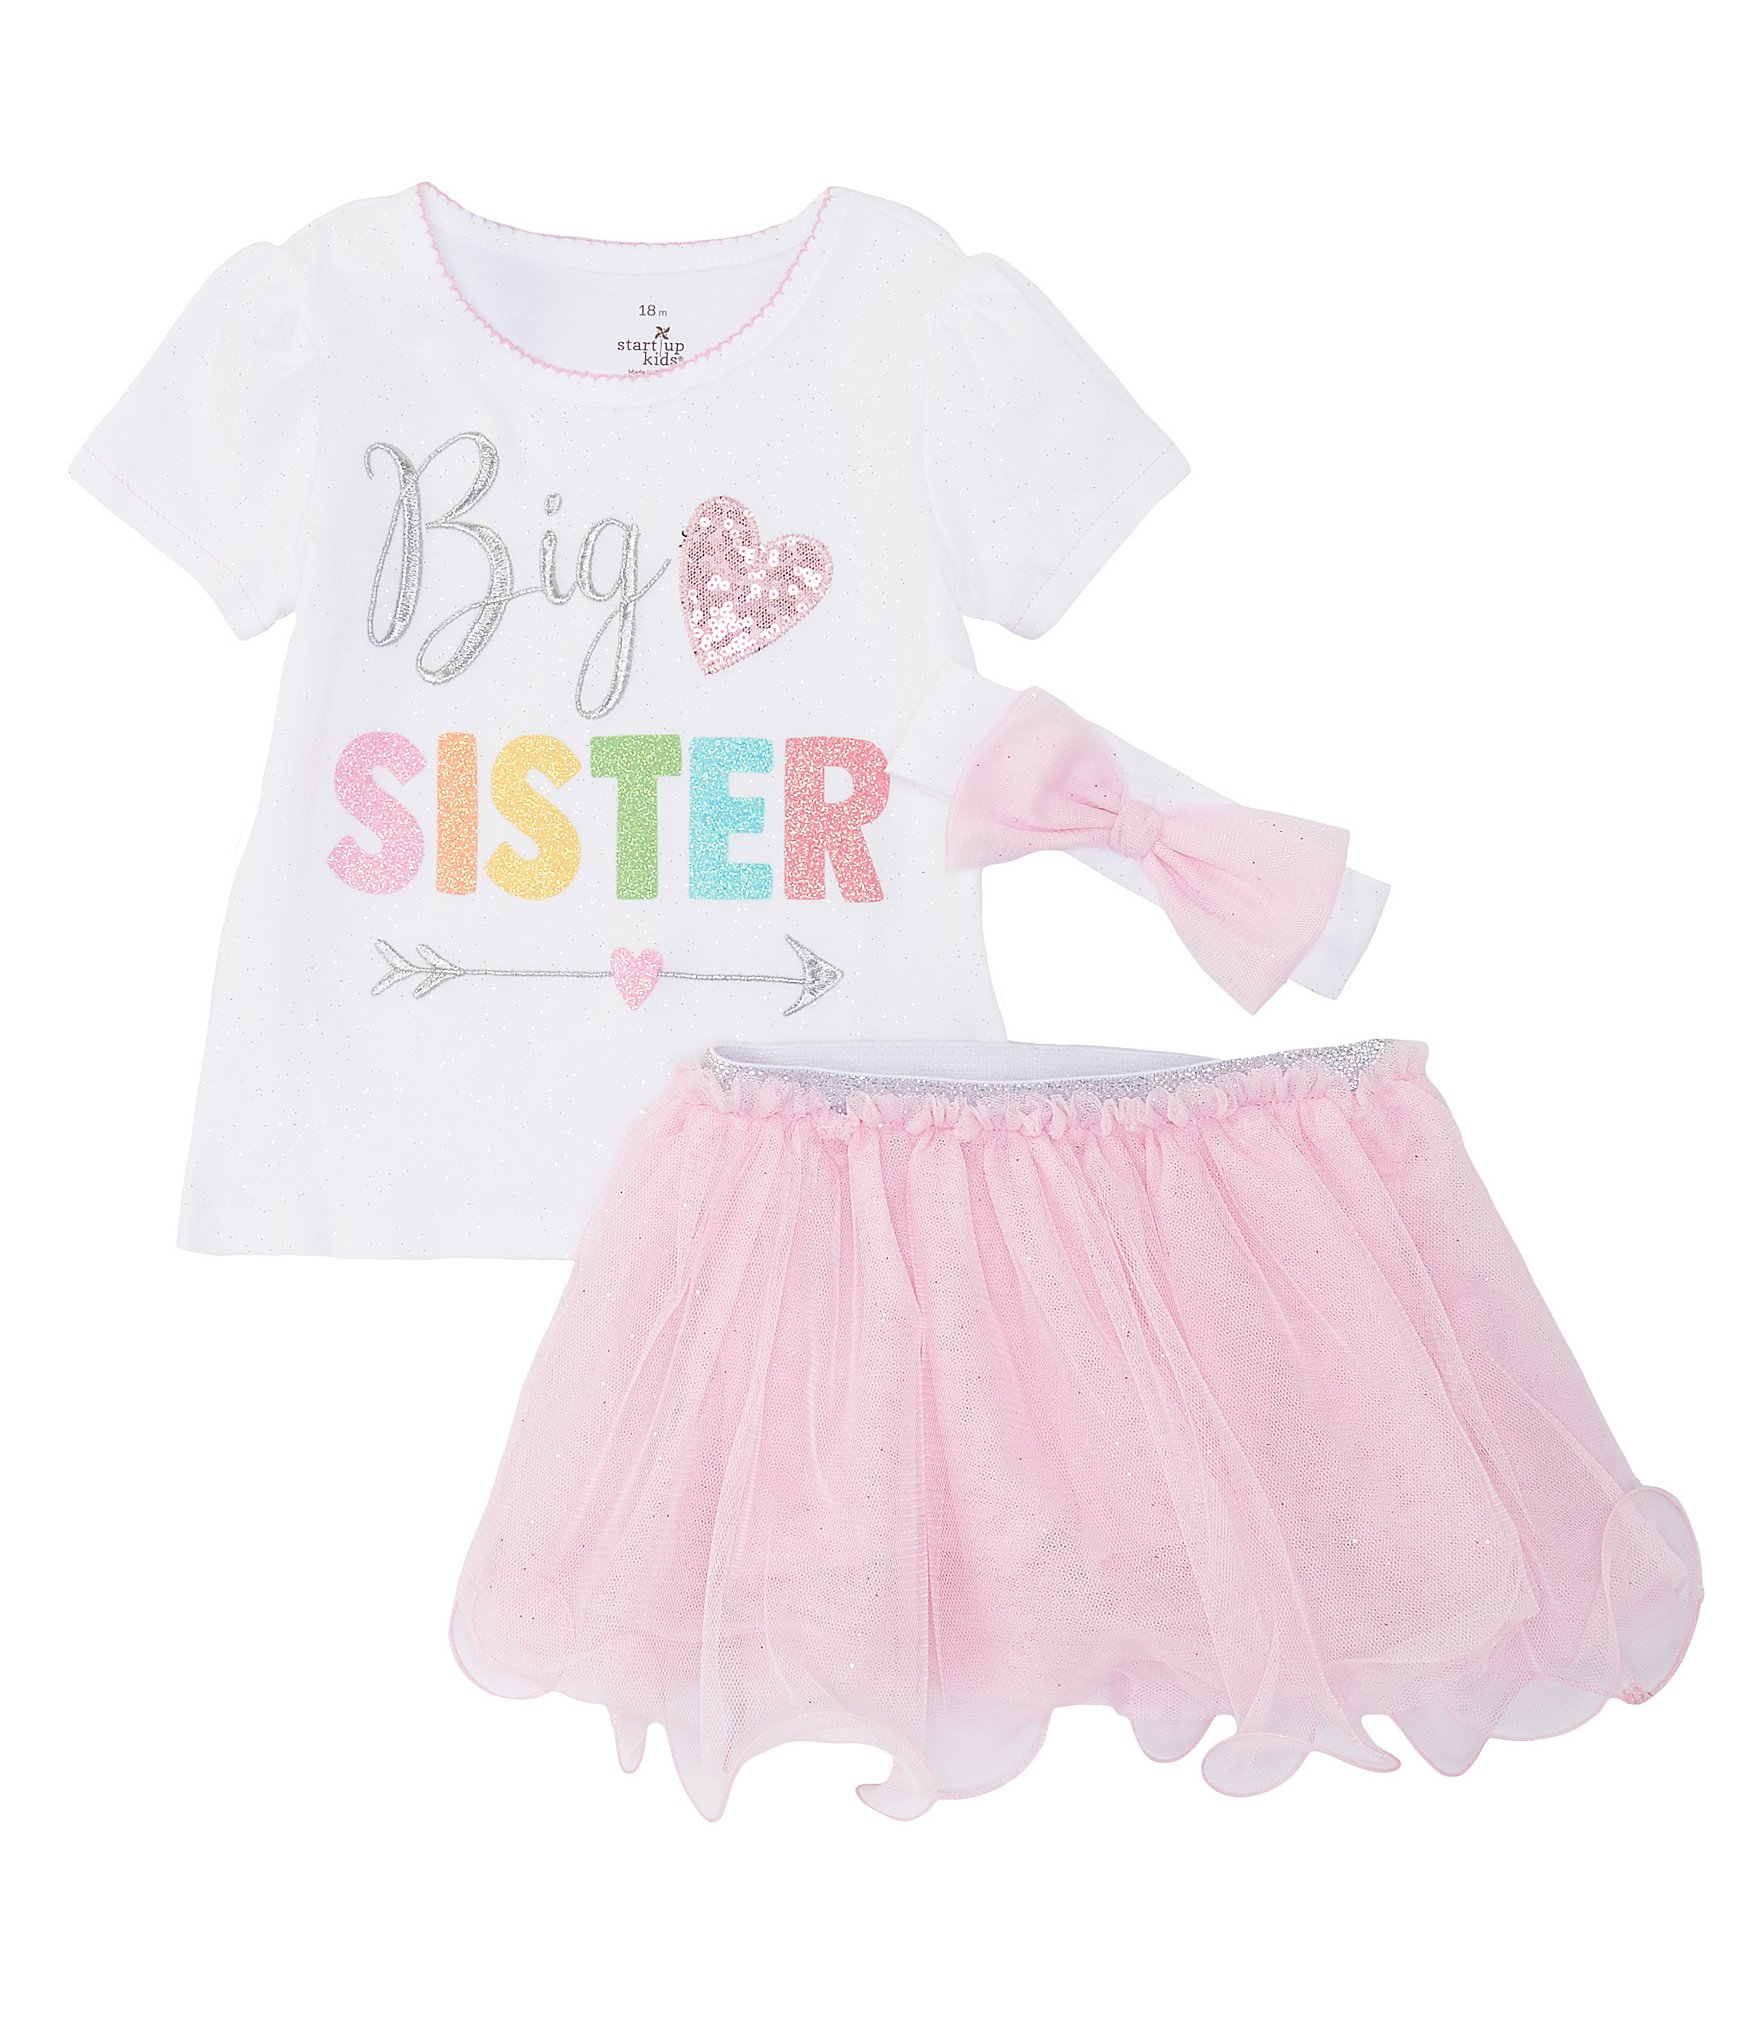 24 Months NWT Toddler Girls BIG SISTER T-Shirt 18 2T Pink Short Sleeve Glitter